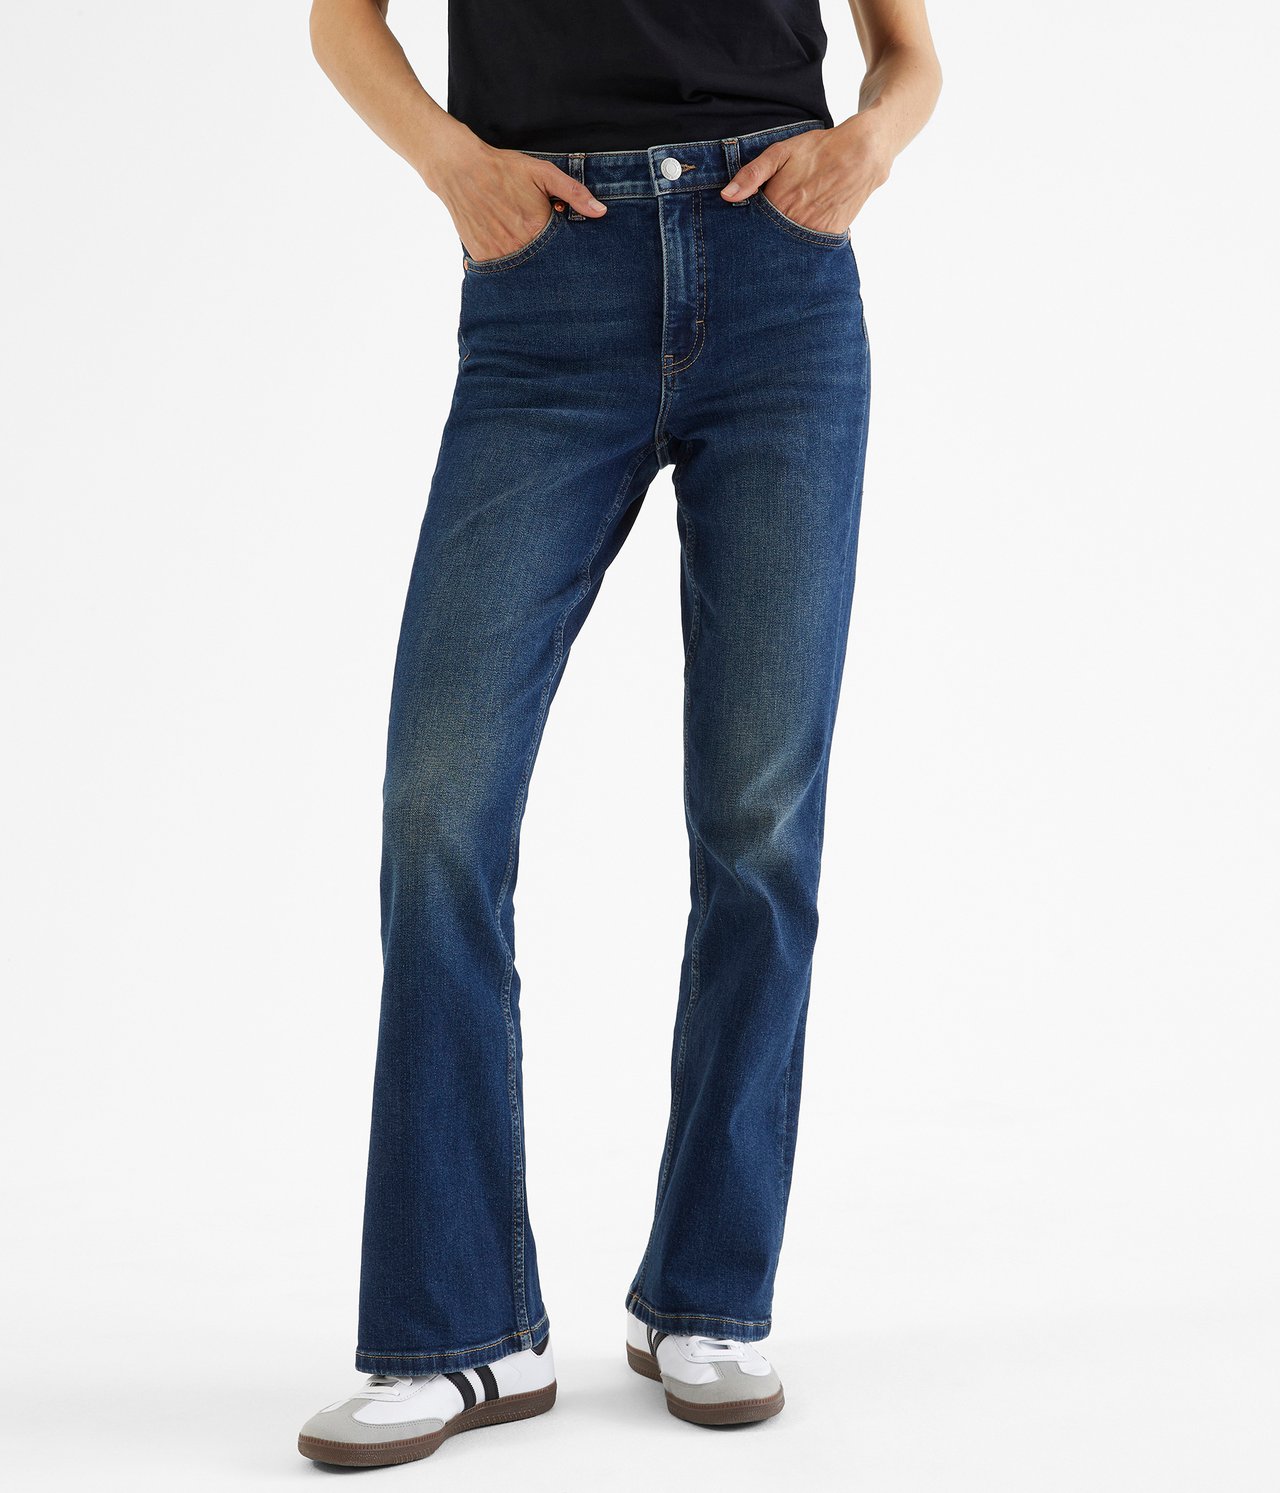 Flare jeans regular waist - Mørk denim - 2